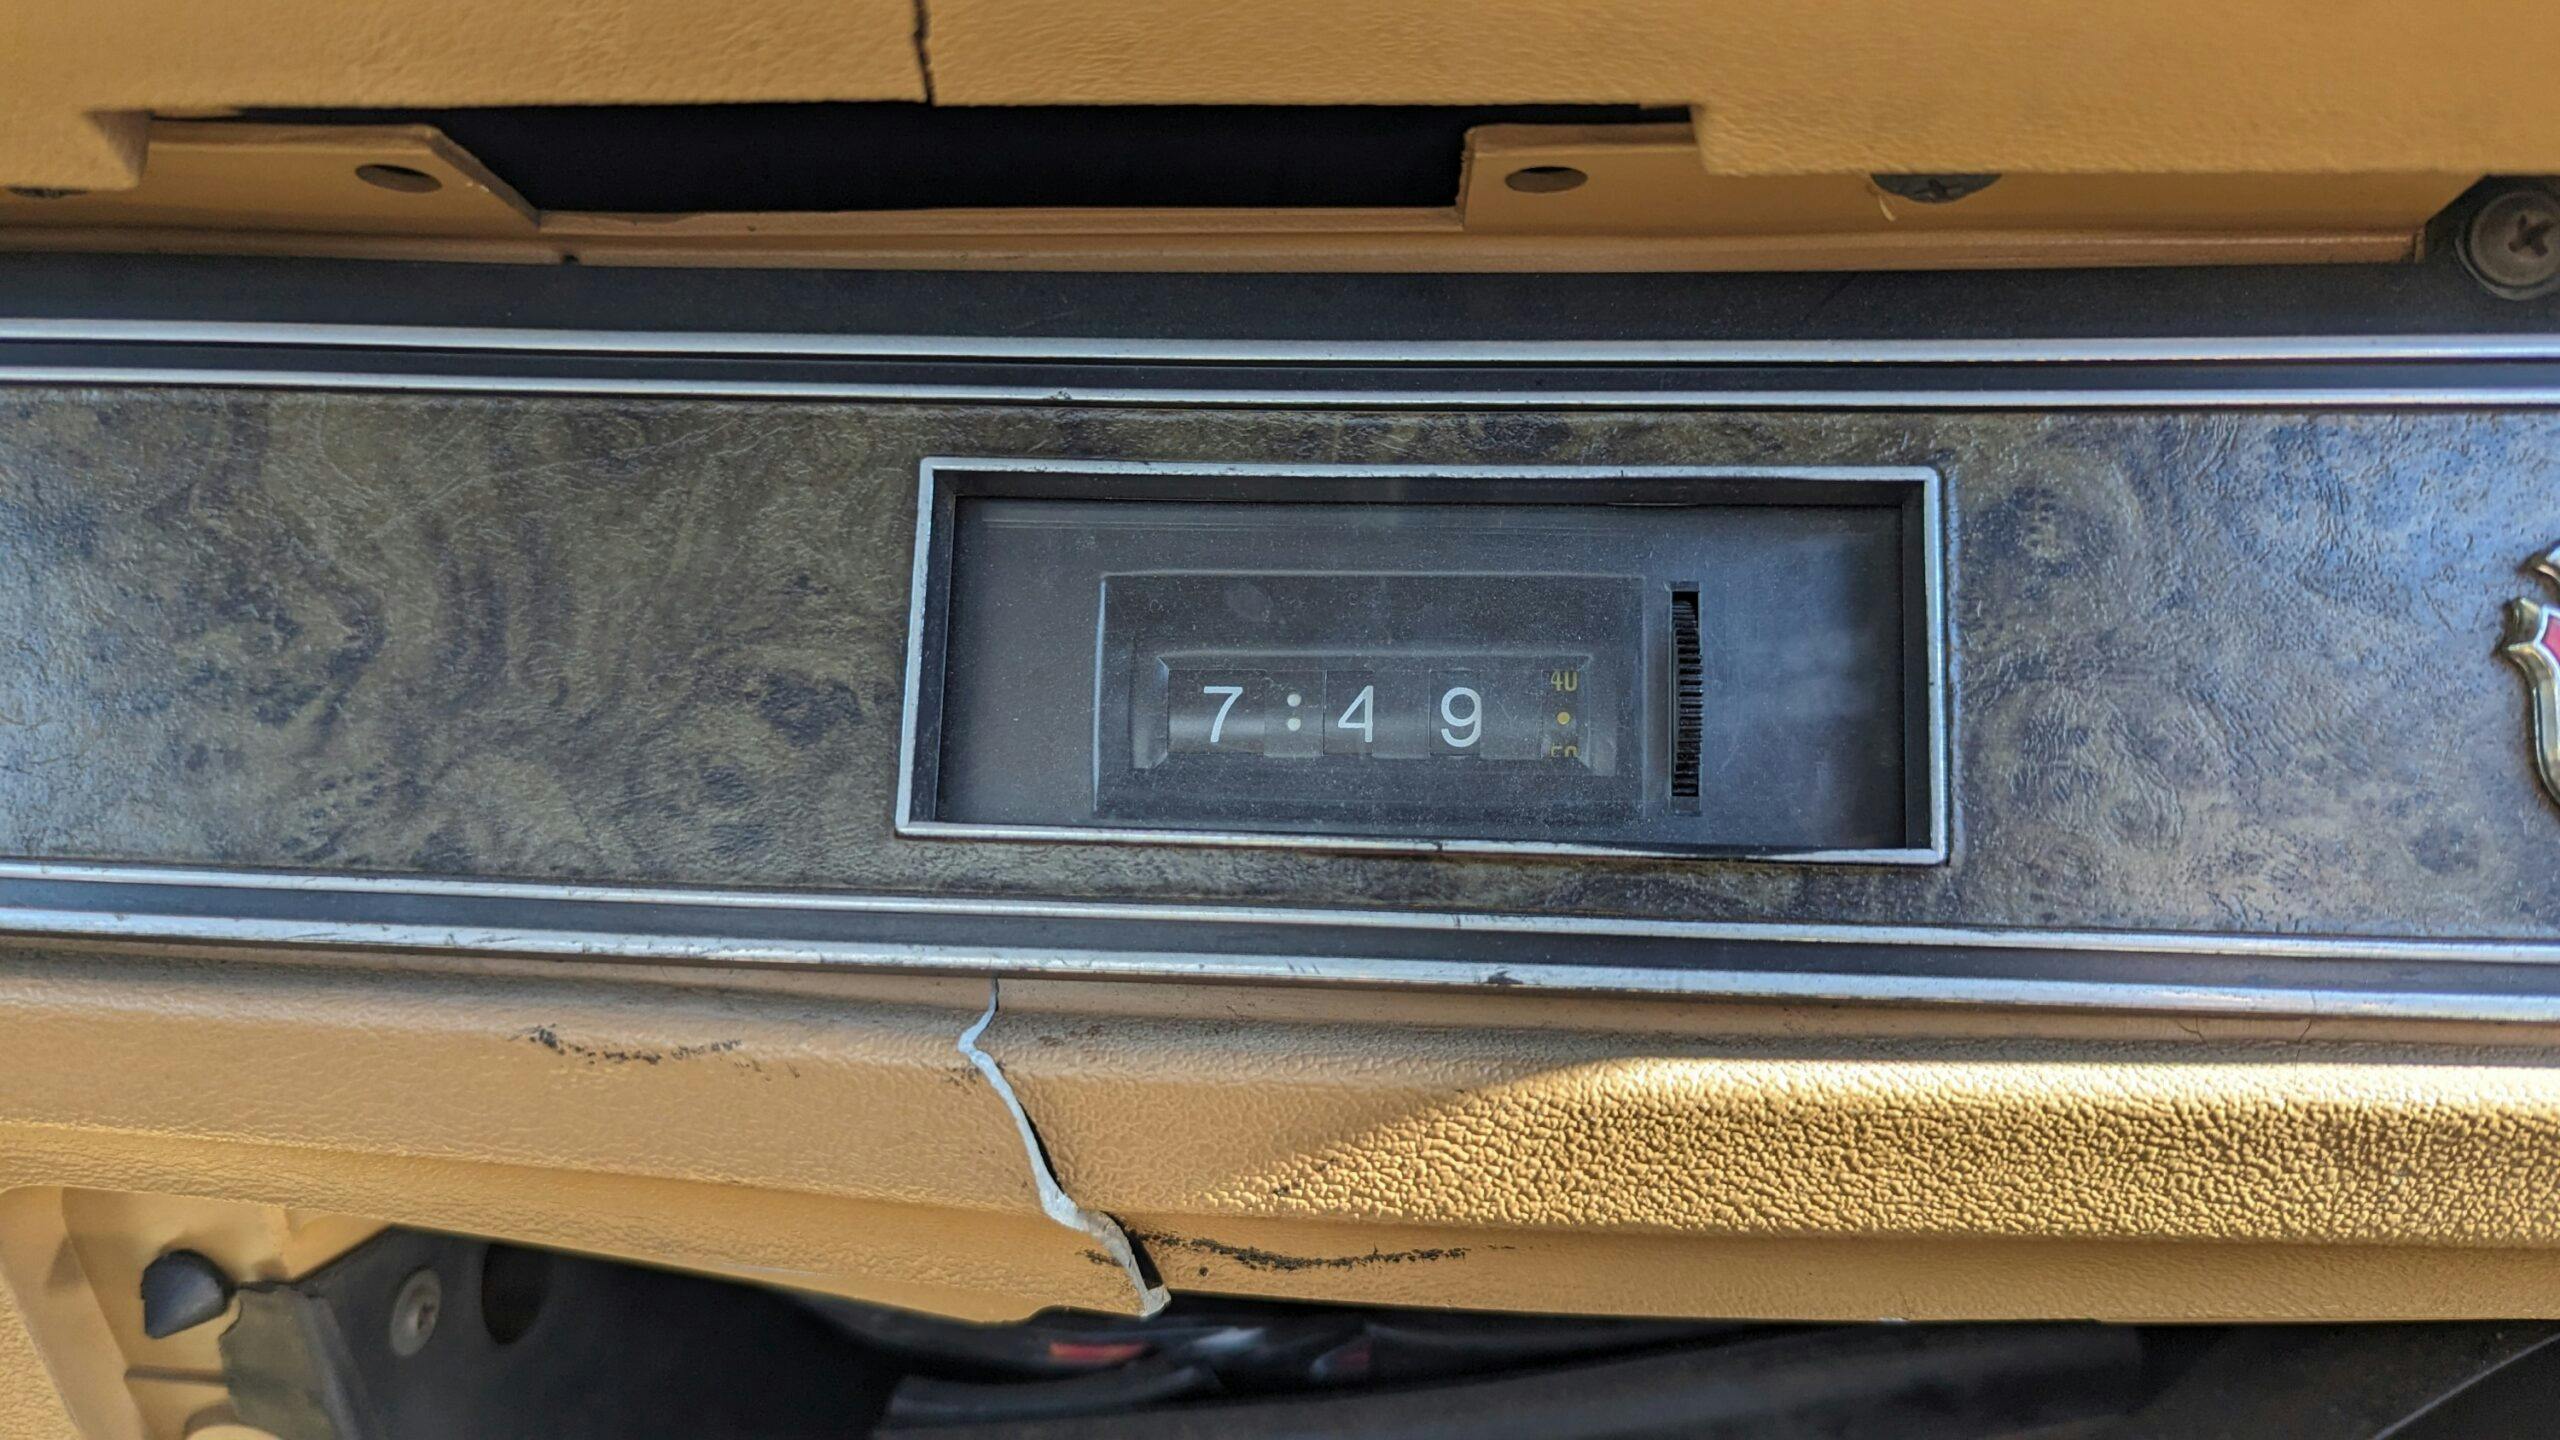 1974 Ford Mustang II Ghia Hardtop dash clock detail